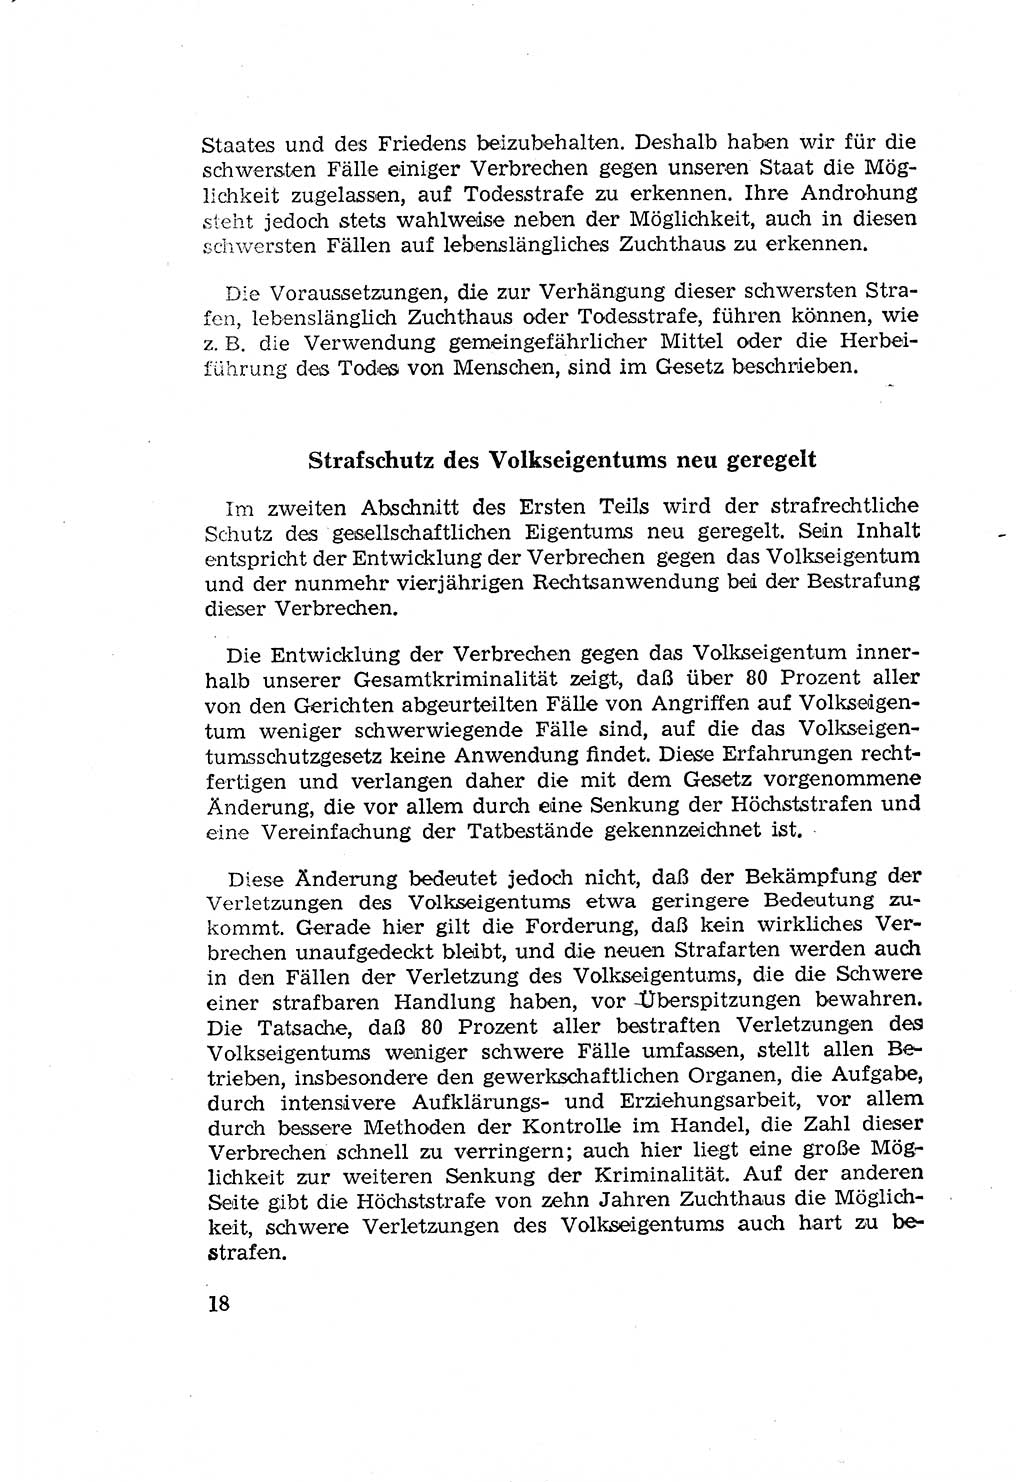 Zum Erlaß des Gesetzes zur Ergänzung des Strafgesetzbuches (StGB), Strafergänzungsgesetz (StEG) [Deutsche Demokratische Republik (DDR)] 1957, Seite 18 (StGB StEG DDR 1957, S. 18)